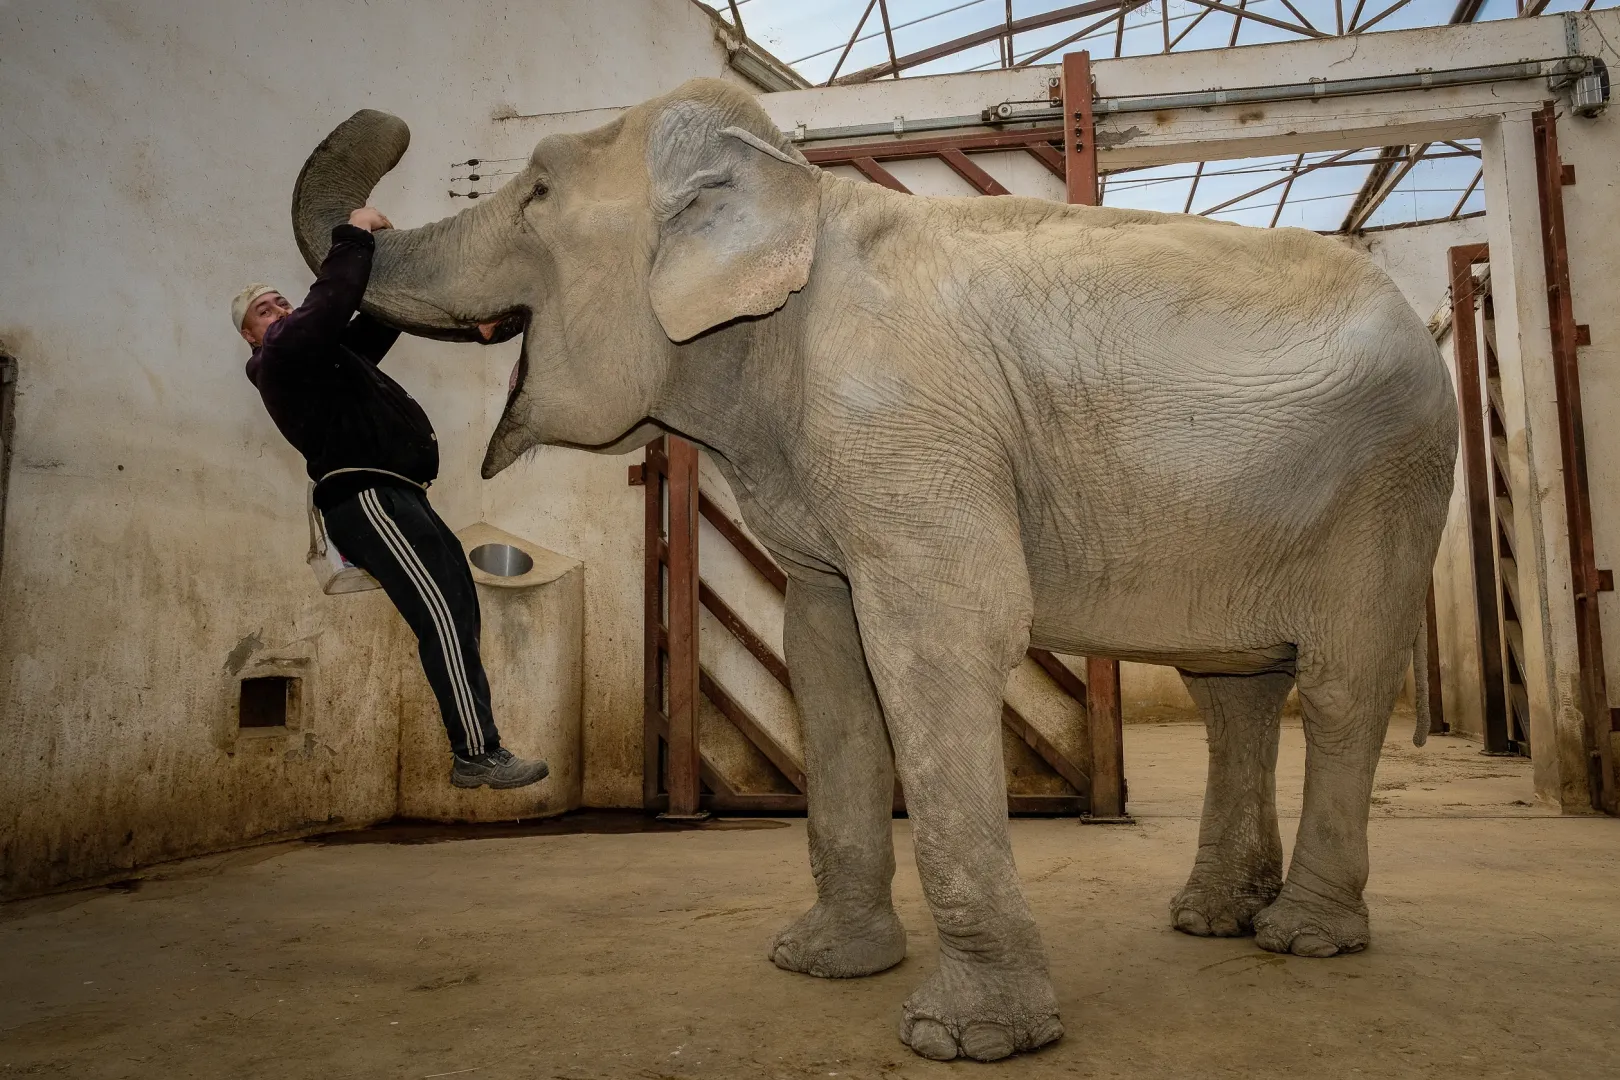 Hella, az állatkert két elefántjának egyike Gombos Lackó gondozóval, aki tíz éve viseli gondját az elefántoknak. Hellát évekkel korábban egy cirkuszból nyugdíjazták – Fotó: Márkos Tamás/Transtelex